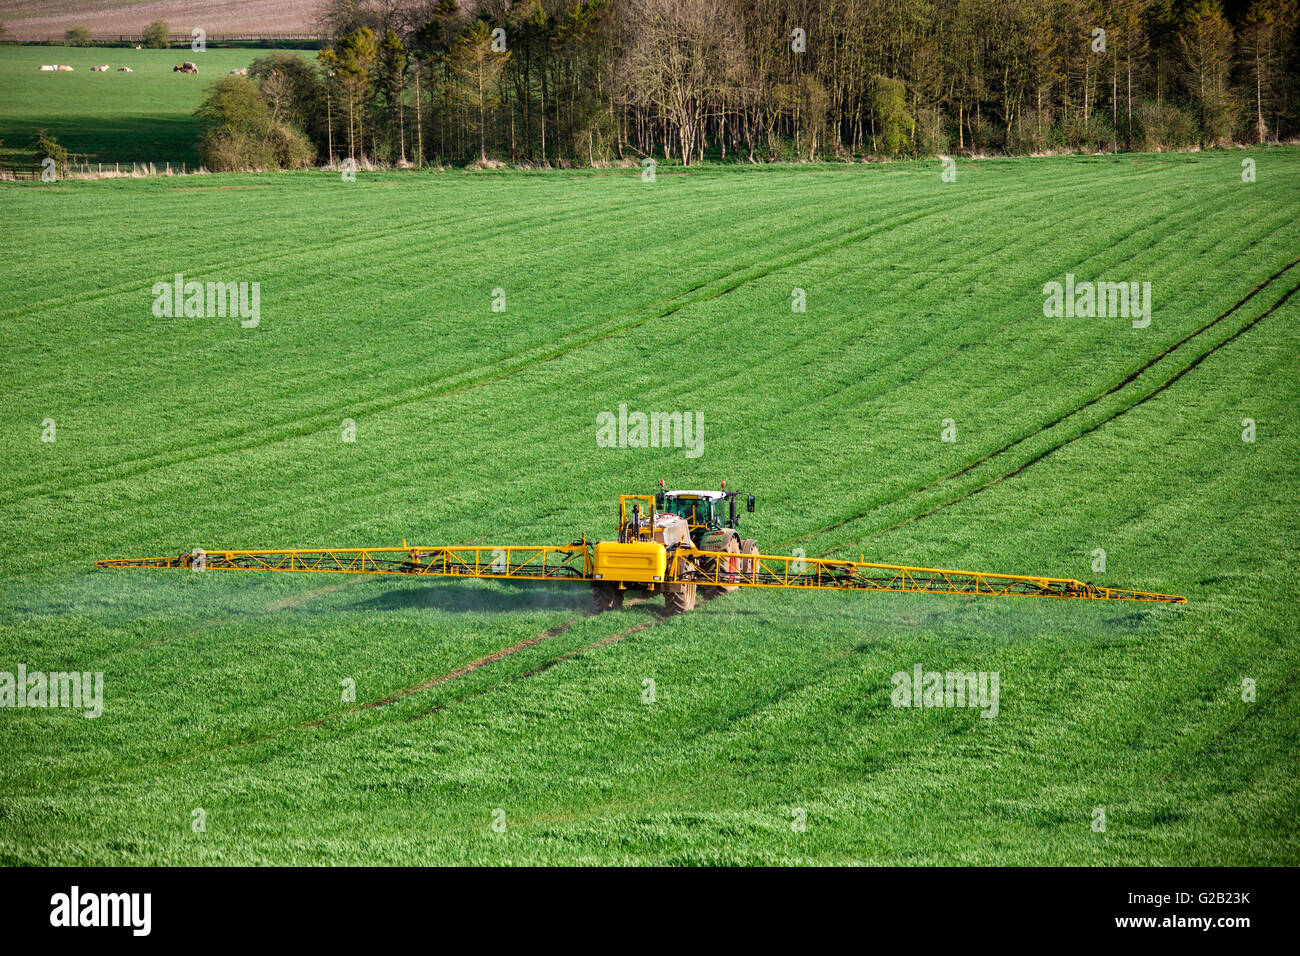 Landwirtschaft - Spritzen Dünger auf Weizen Ernte - North Yorkshire - England. Stockfoto